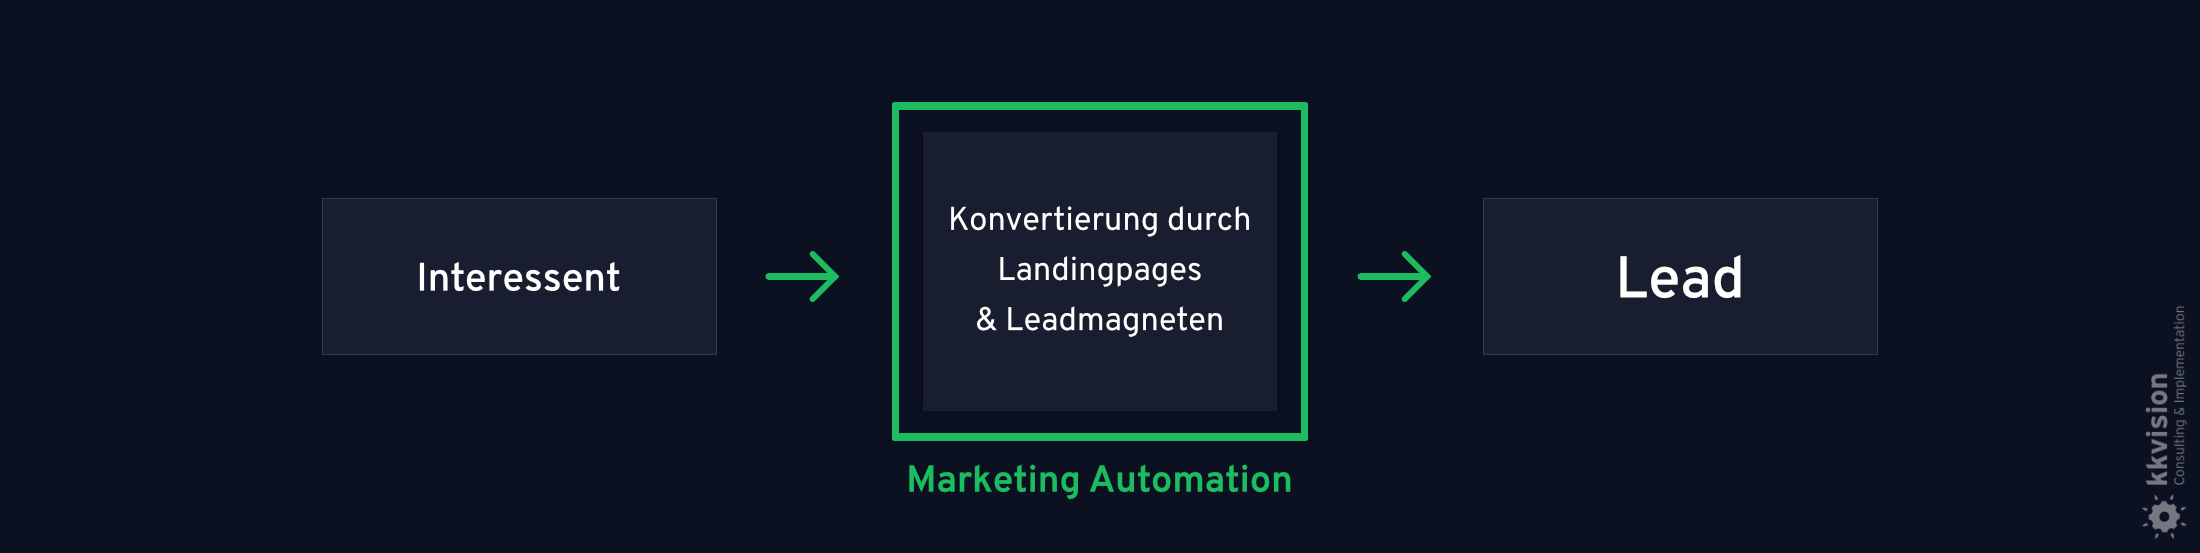 B2B Marketing Automation_1